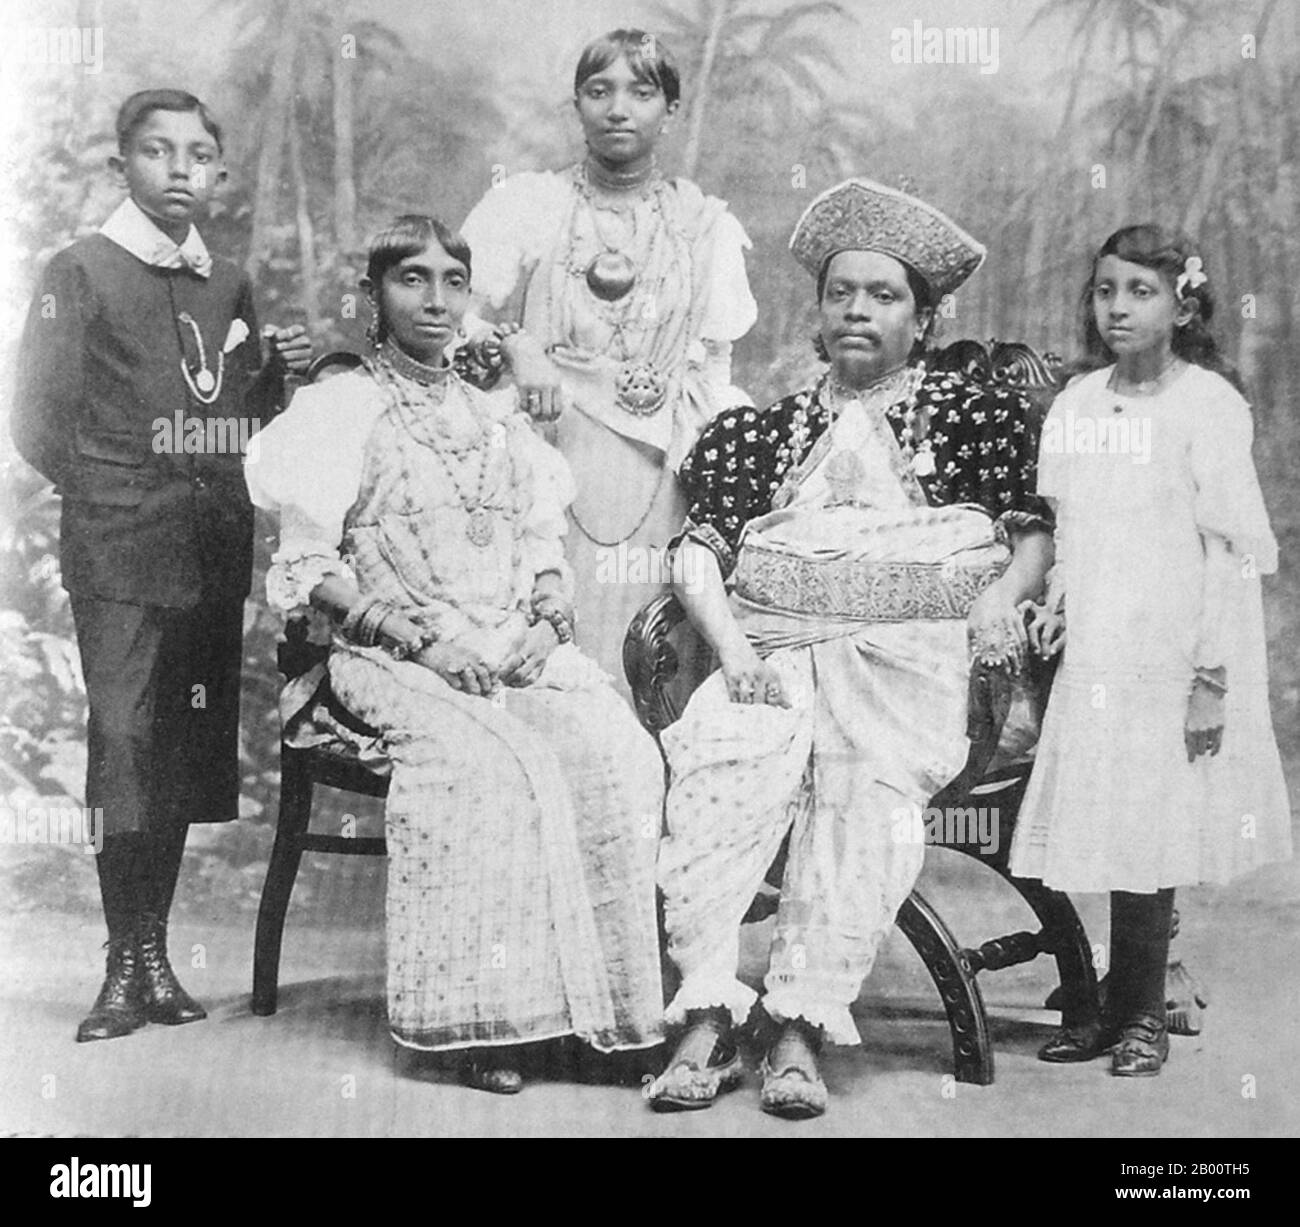 Sri Lanka: L'aristocrate de Kandyan John Henry Meedeniya (1867-1931), également connu sous le nom de J. H. Meedeniya Adigar, avec sa famille en 1905. En 1592, Kandy est devenue la capitale du dernier Royaume indépendant restant à Sri Lanka après que les régions côtières aient été conquises par les Portugais. Kandy est resté indépendant jusqu'au début du XIXe siècle. Lors de la deuxième guerre de Kandyan, les Britanniques n'ont rencontré aucune résistance et ont atteint la ville le 10 février 1815. Le 2 mars 1815, un traité connu sous le nom de convention de Kandyan a été signé entre les Britanniques et les Radalas (aristocrates de Kandyan). Banque D'Images